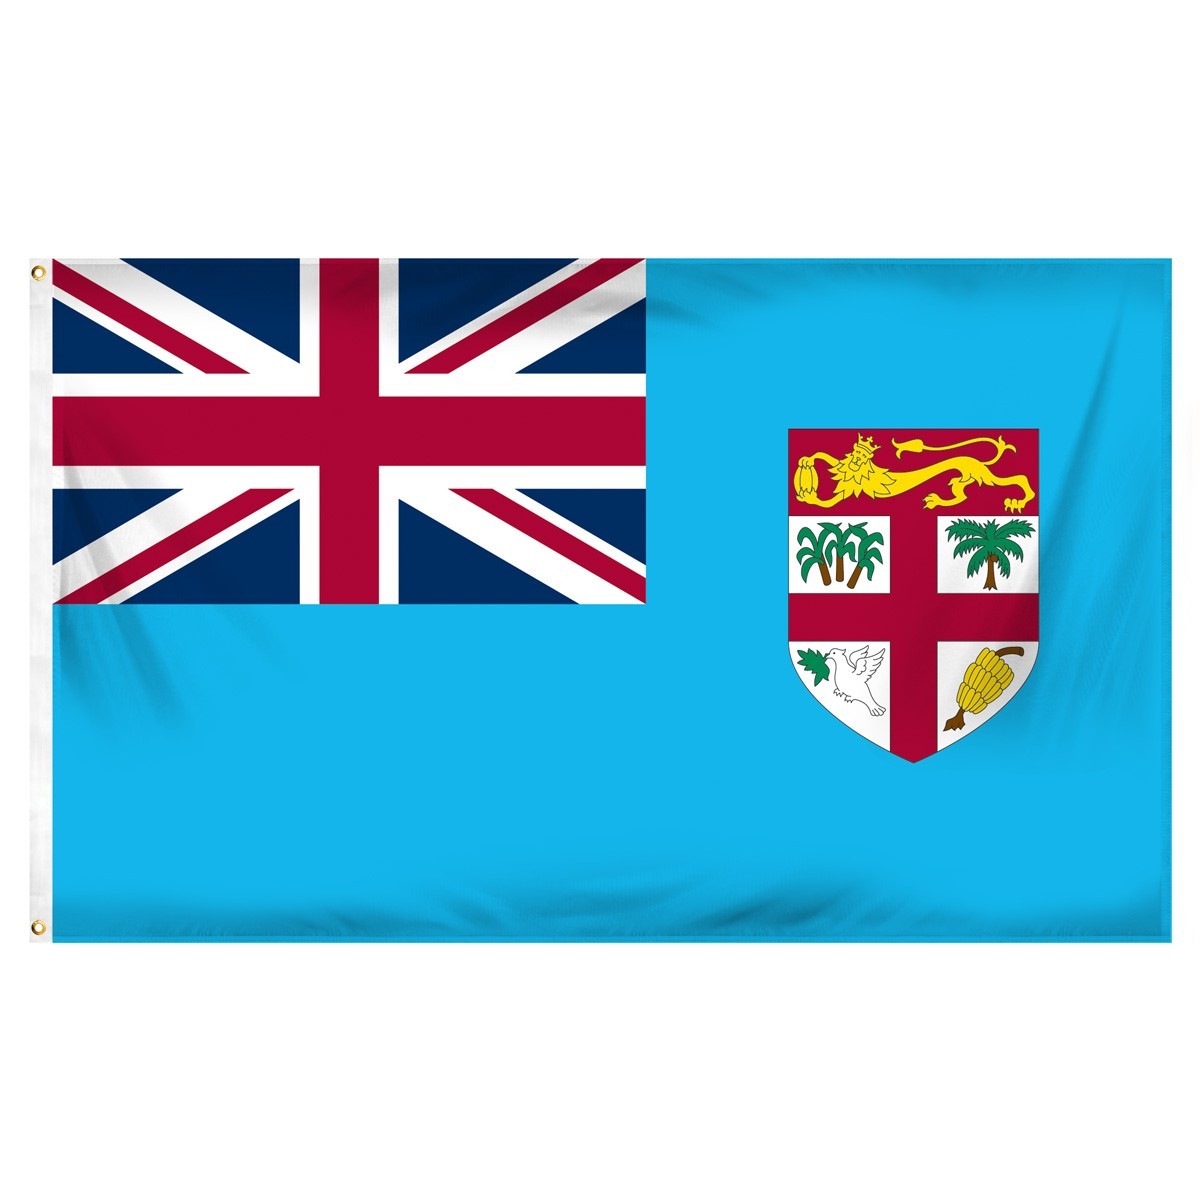 Banderas de Fiyi